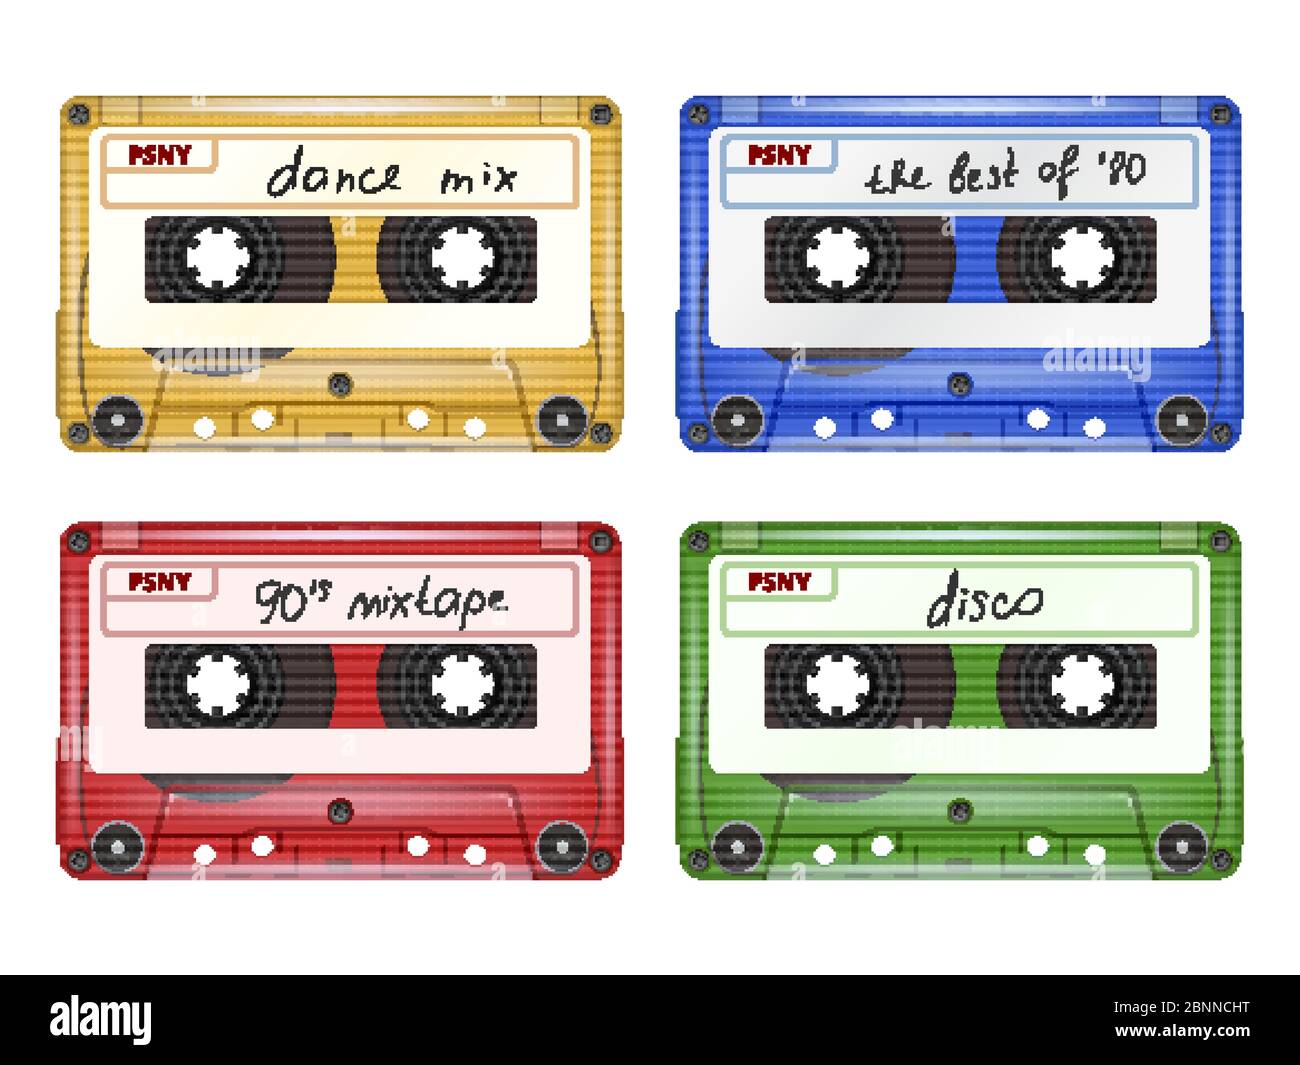 Cassette audio de couleur. Mixtape rétro pop rock matériel de musique ensemble vectoriel d'images réalistes isolé Illustration de Vecteur